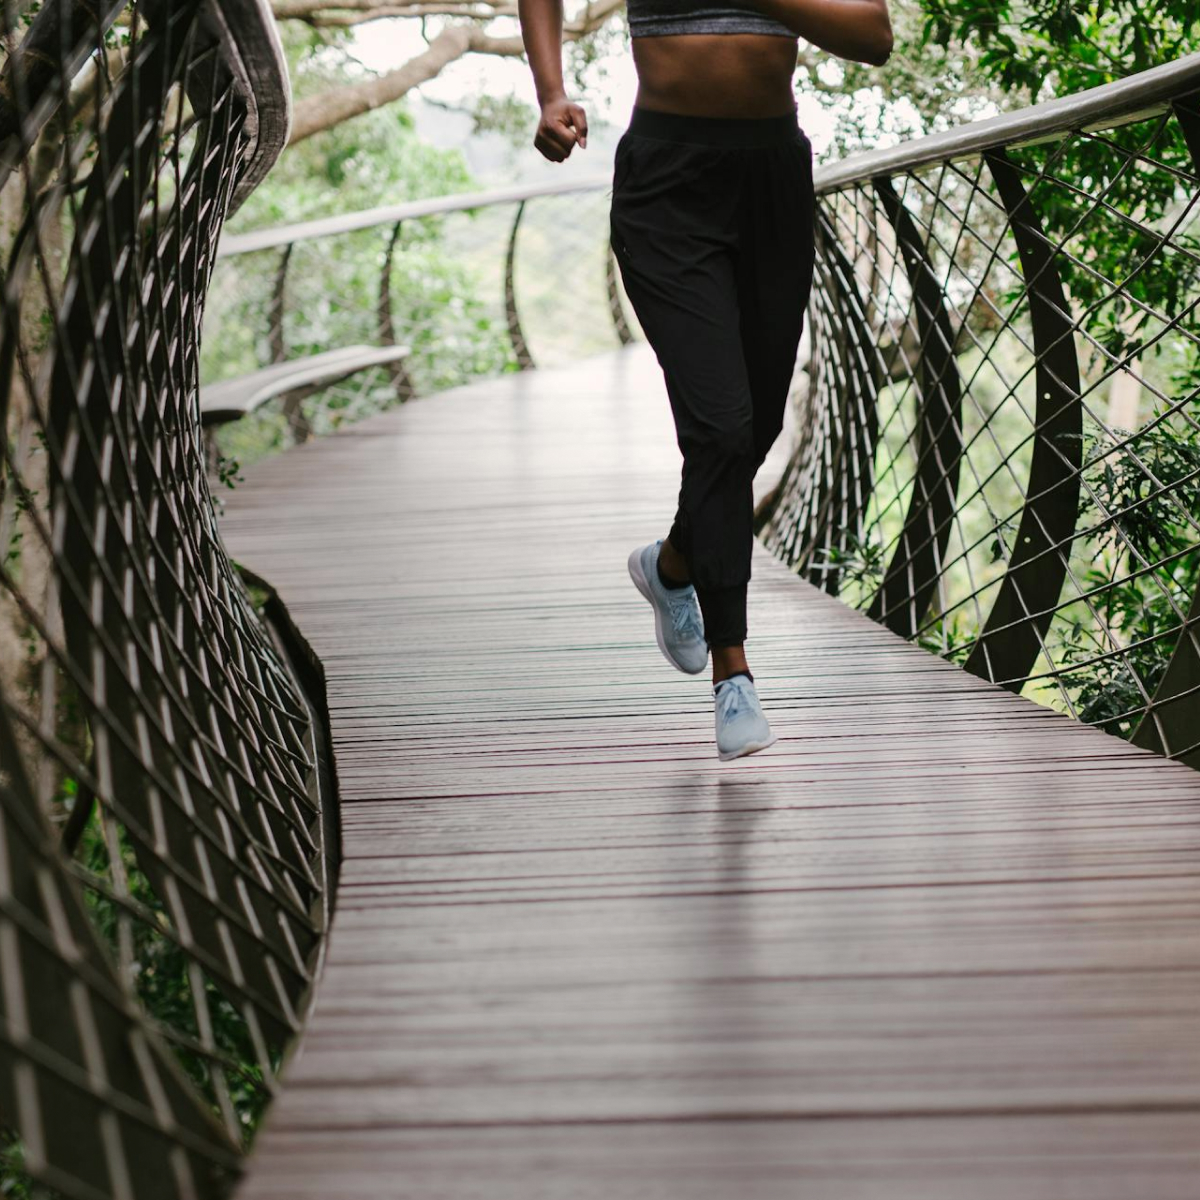 Femeie alergând pe podul cu încălțăminte comodă pentru alergare